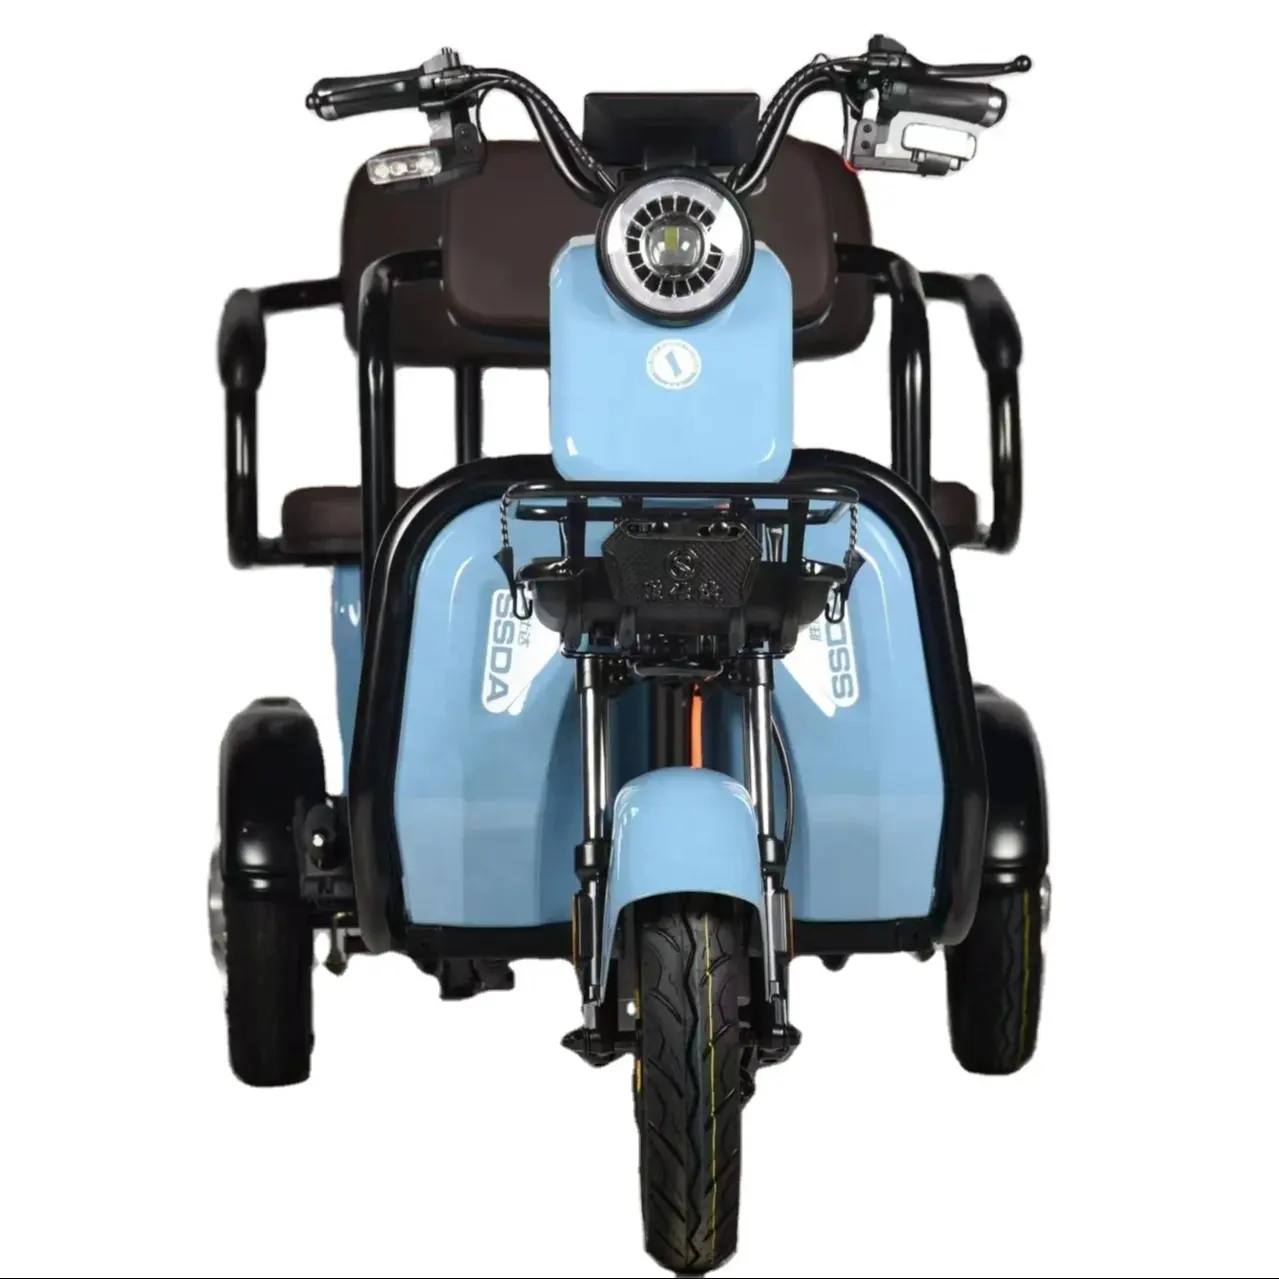 Triciclo elétrico fechado barato para motocicleta, triciclo elétrico para 3 pessoas, bicicleta elétrica para adultos da China